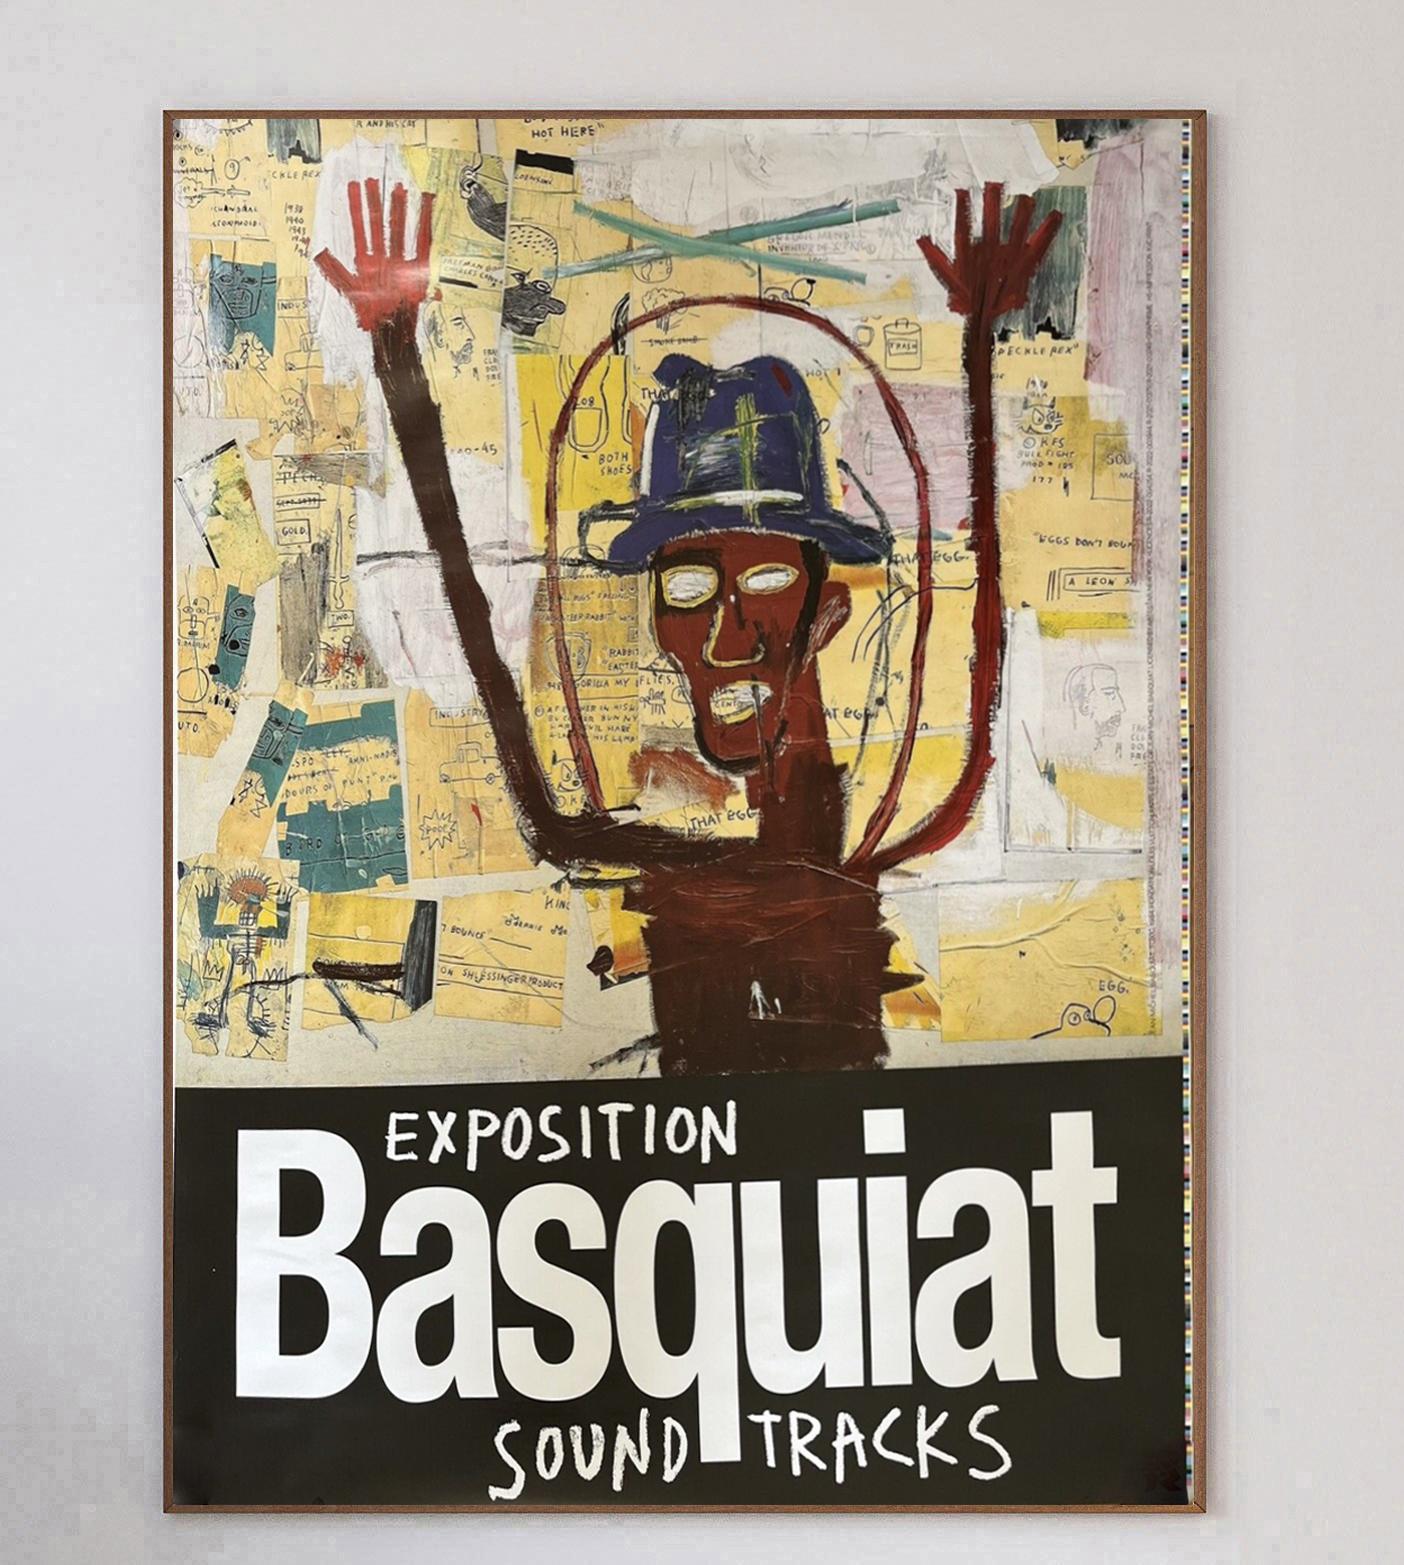 Als einer der einflussreichsten Künstler des 20. Jahrhunderts erlangte Jean-Michel Basquiat in den 1970er und frühen 1980er Jahren große Bekanntheit. Er hat in so kurzer Zeit so viel erreicht: Seine neoexpressionistischen Kunstwerke sind ein